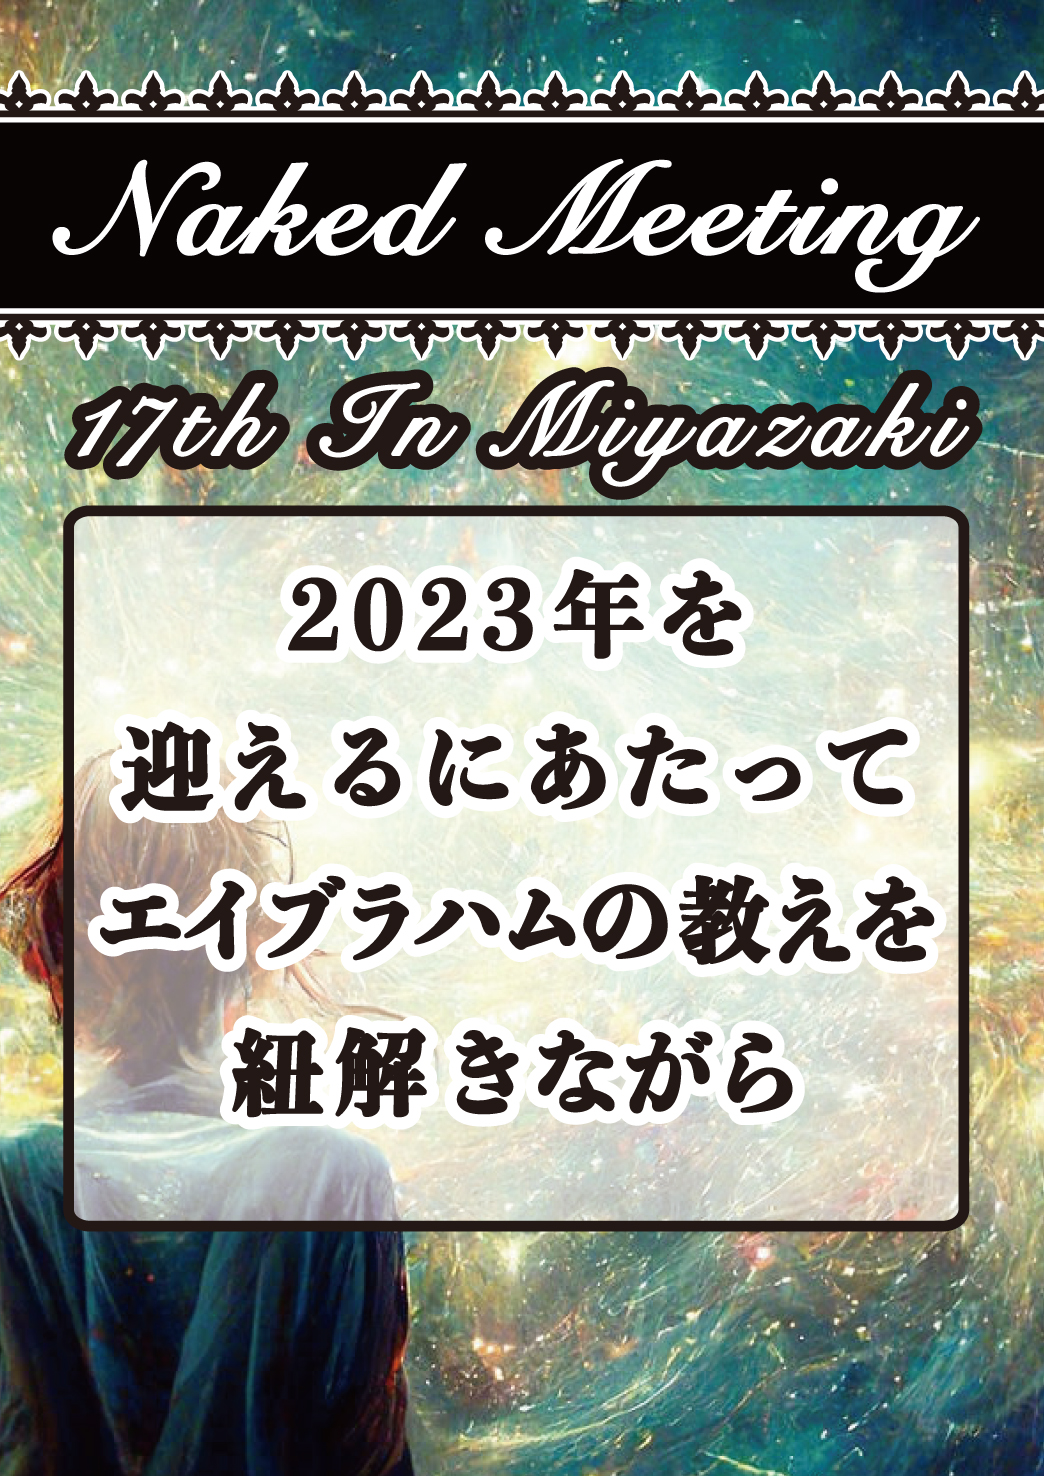 【アーカイブ】Naked Meeting in Miyazaki17 ～2023年を迎えるにあたってエイブラハムの教えを紐解きながら～